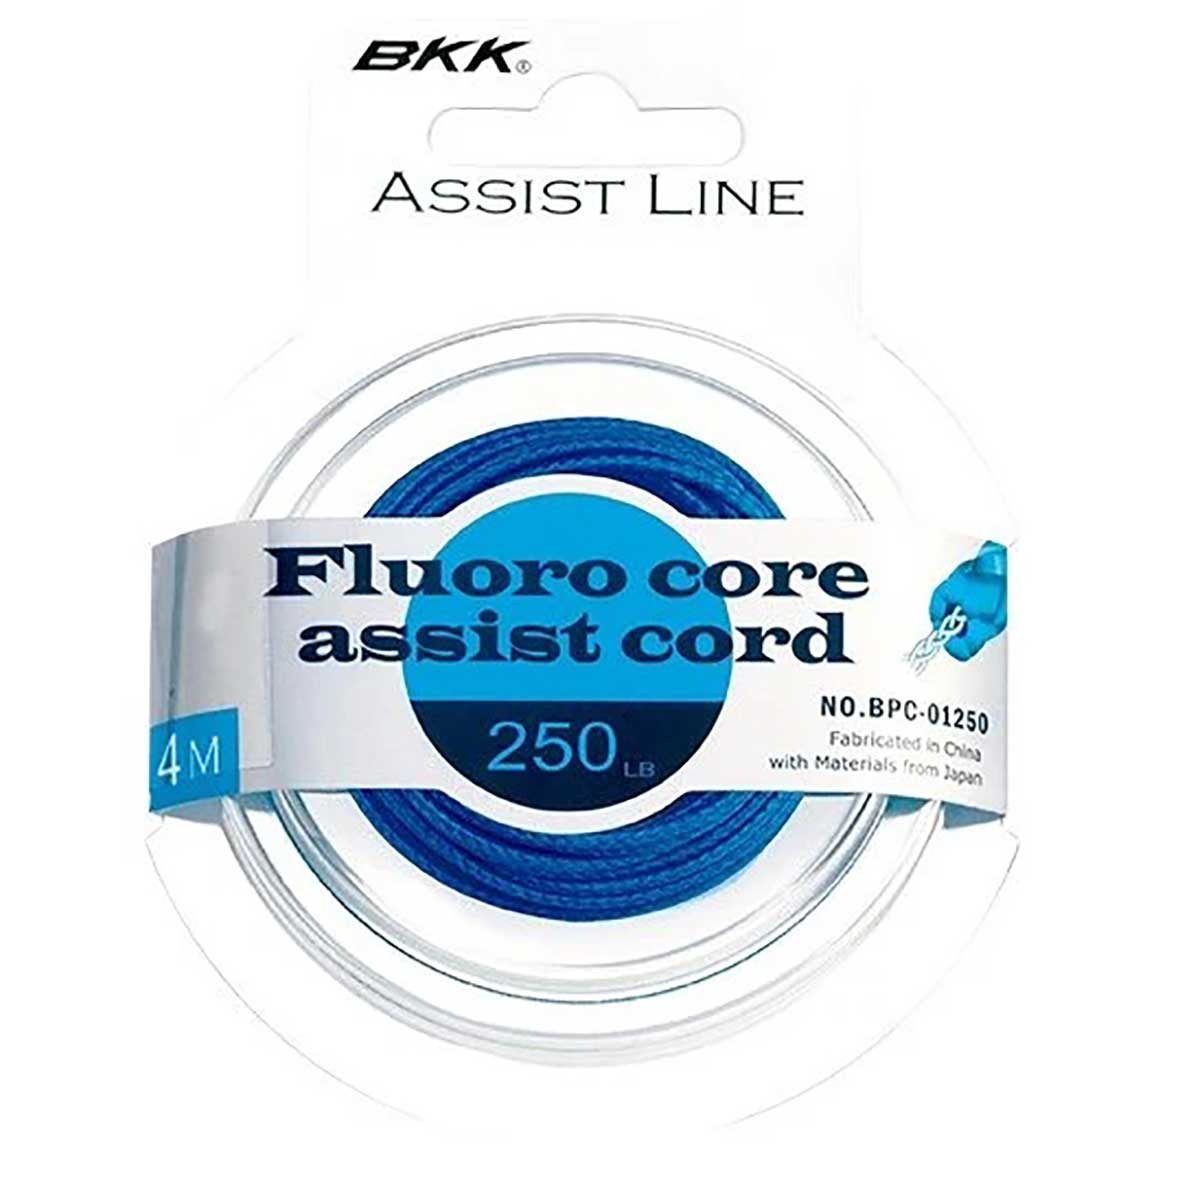 BKK Fluoro Core Assist Cord Asist İpi,bkk kalitesinde asist iğnesi bağlamak için kullanılan örgü kordon Özellikle jigging uygulamaları için kullanılan asist ipi